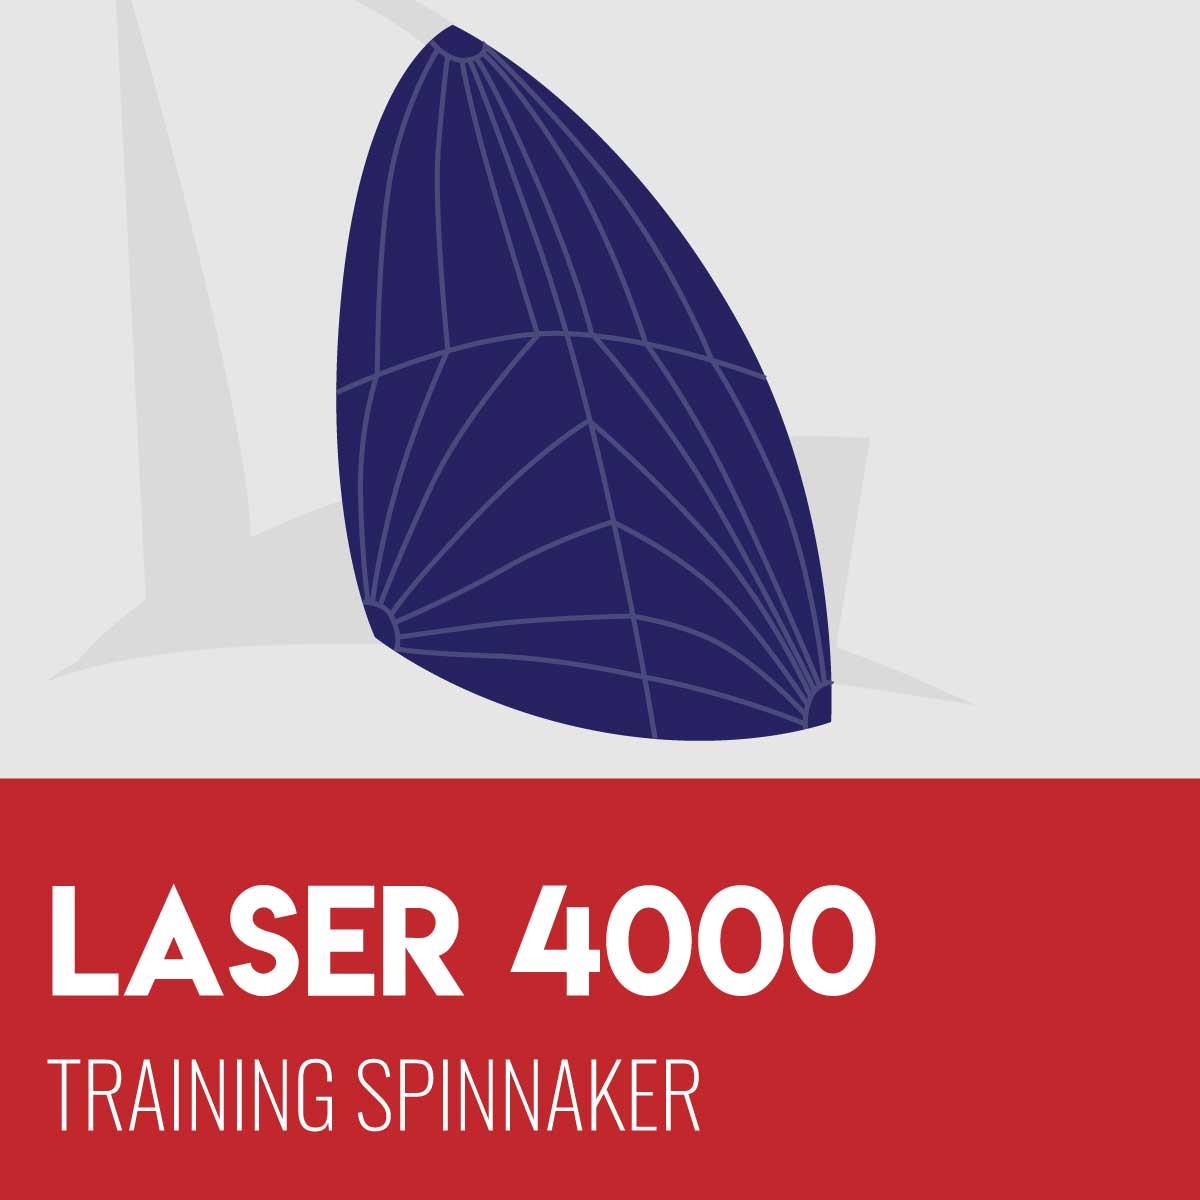 Laser 4000 Training Spinnaker